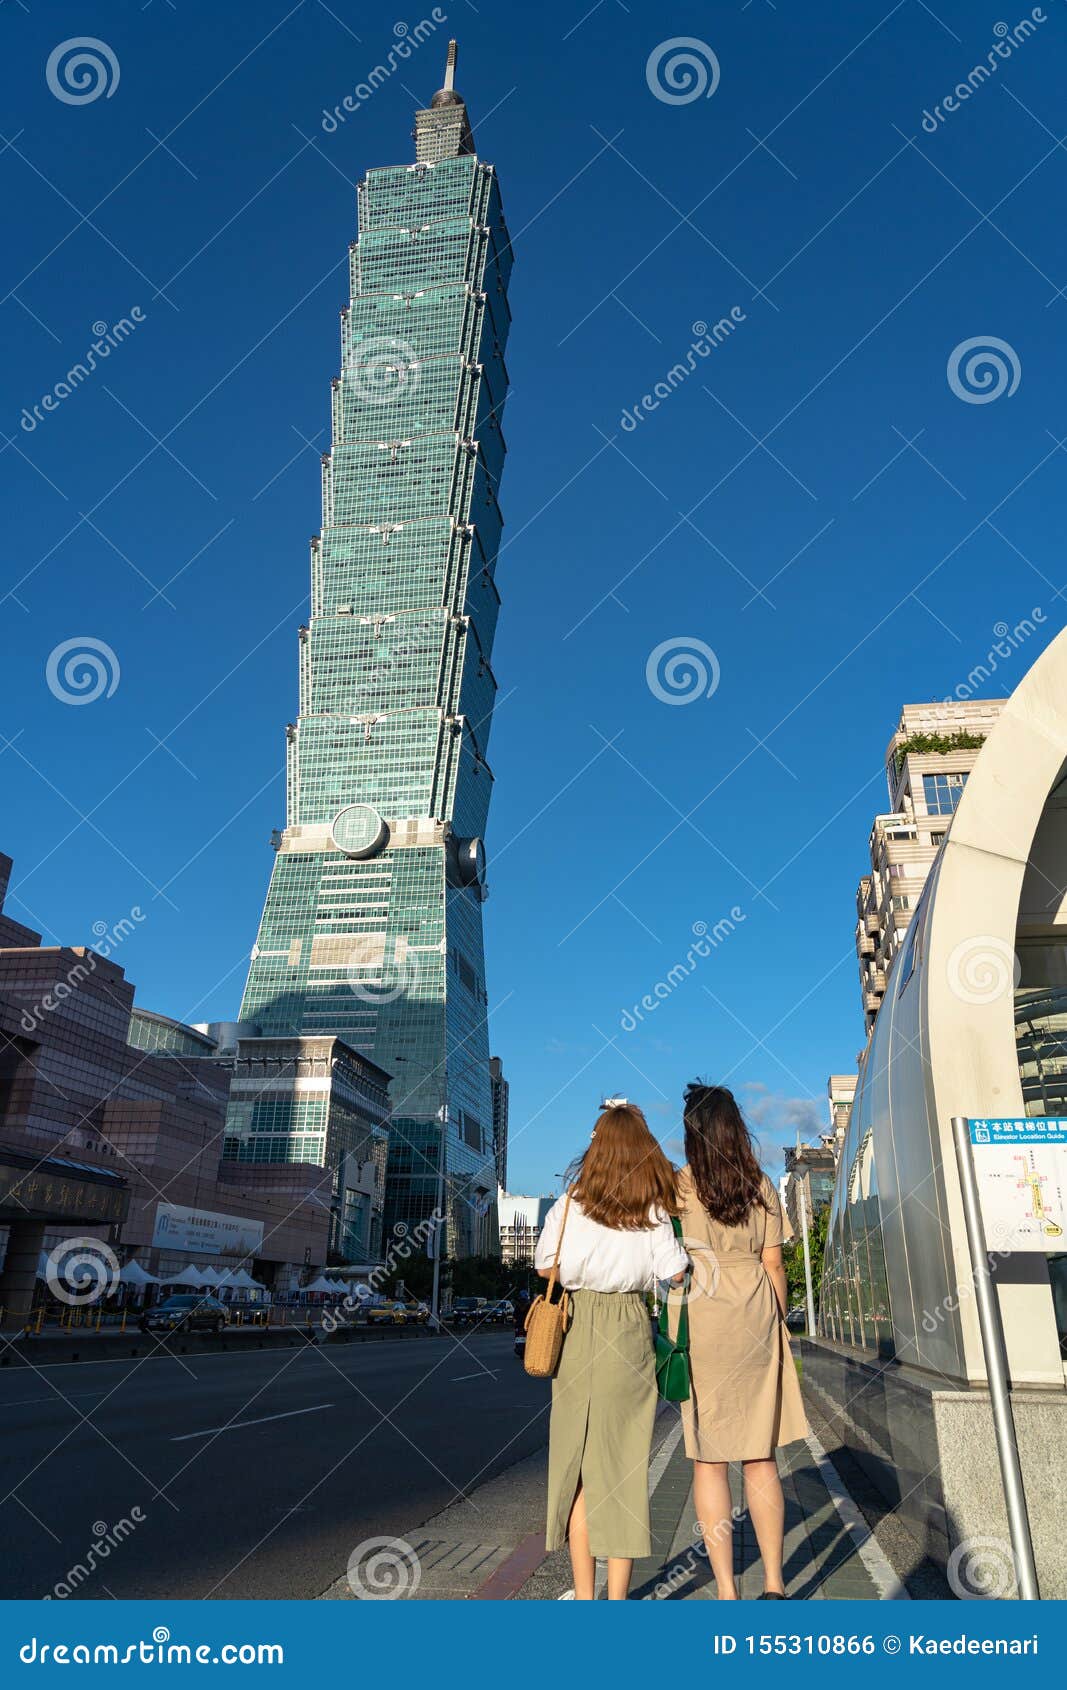 台湾台北101摩天大楼-建筑风景壁纸-1366x768下载 | 10wallpaper.com